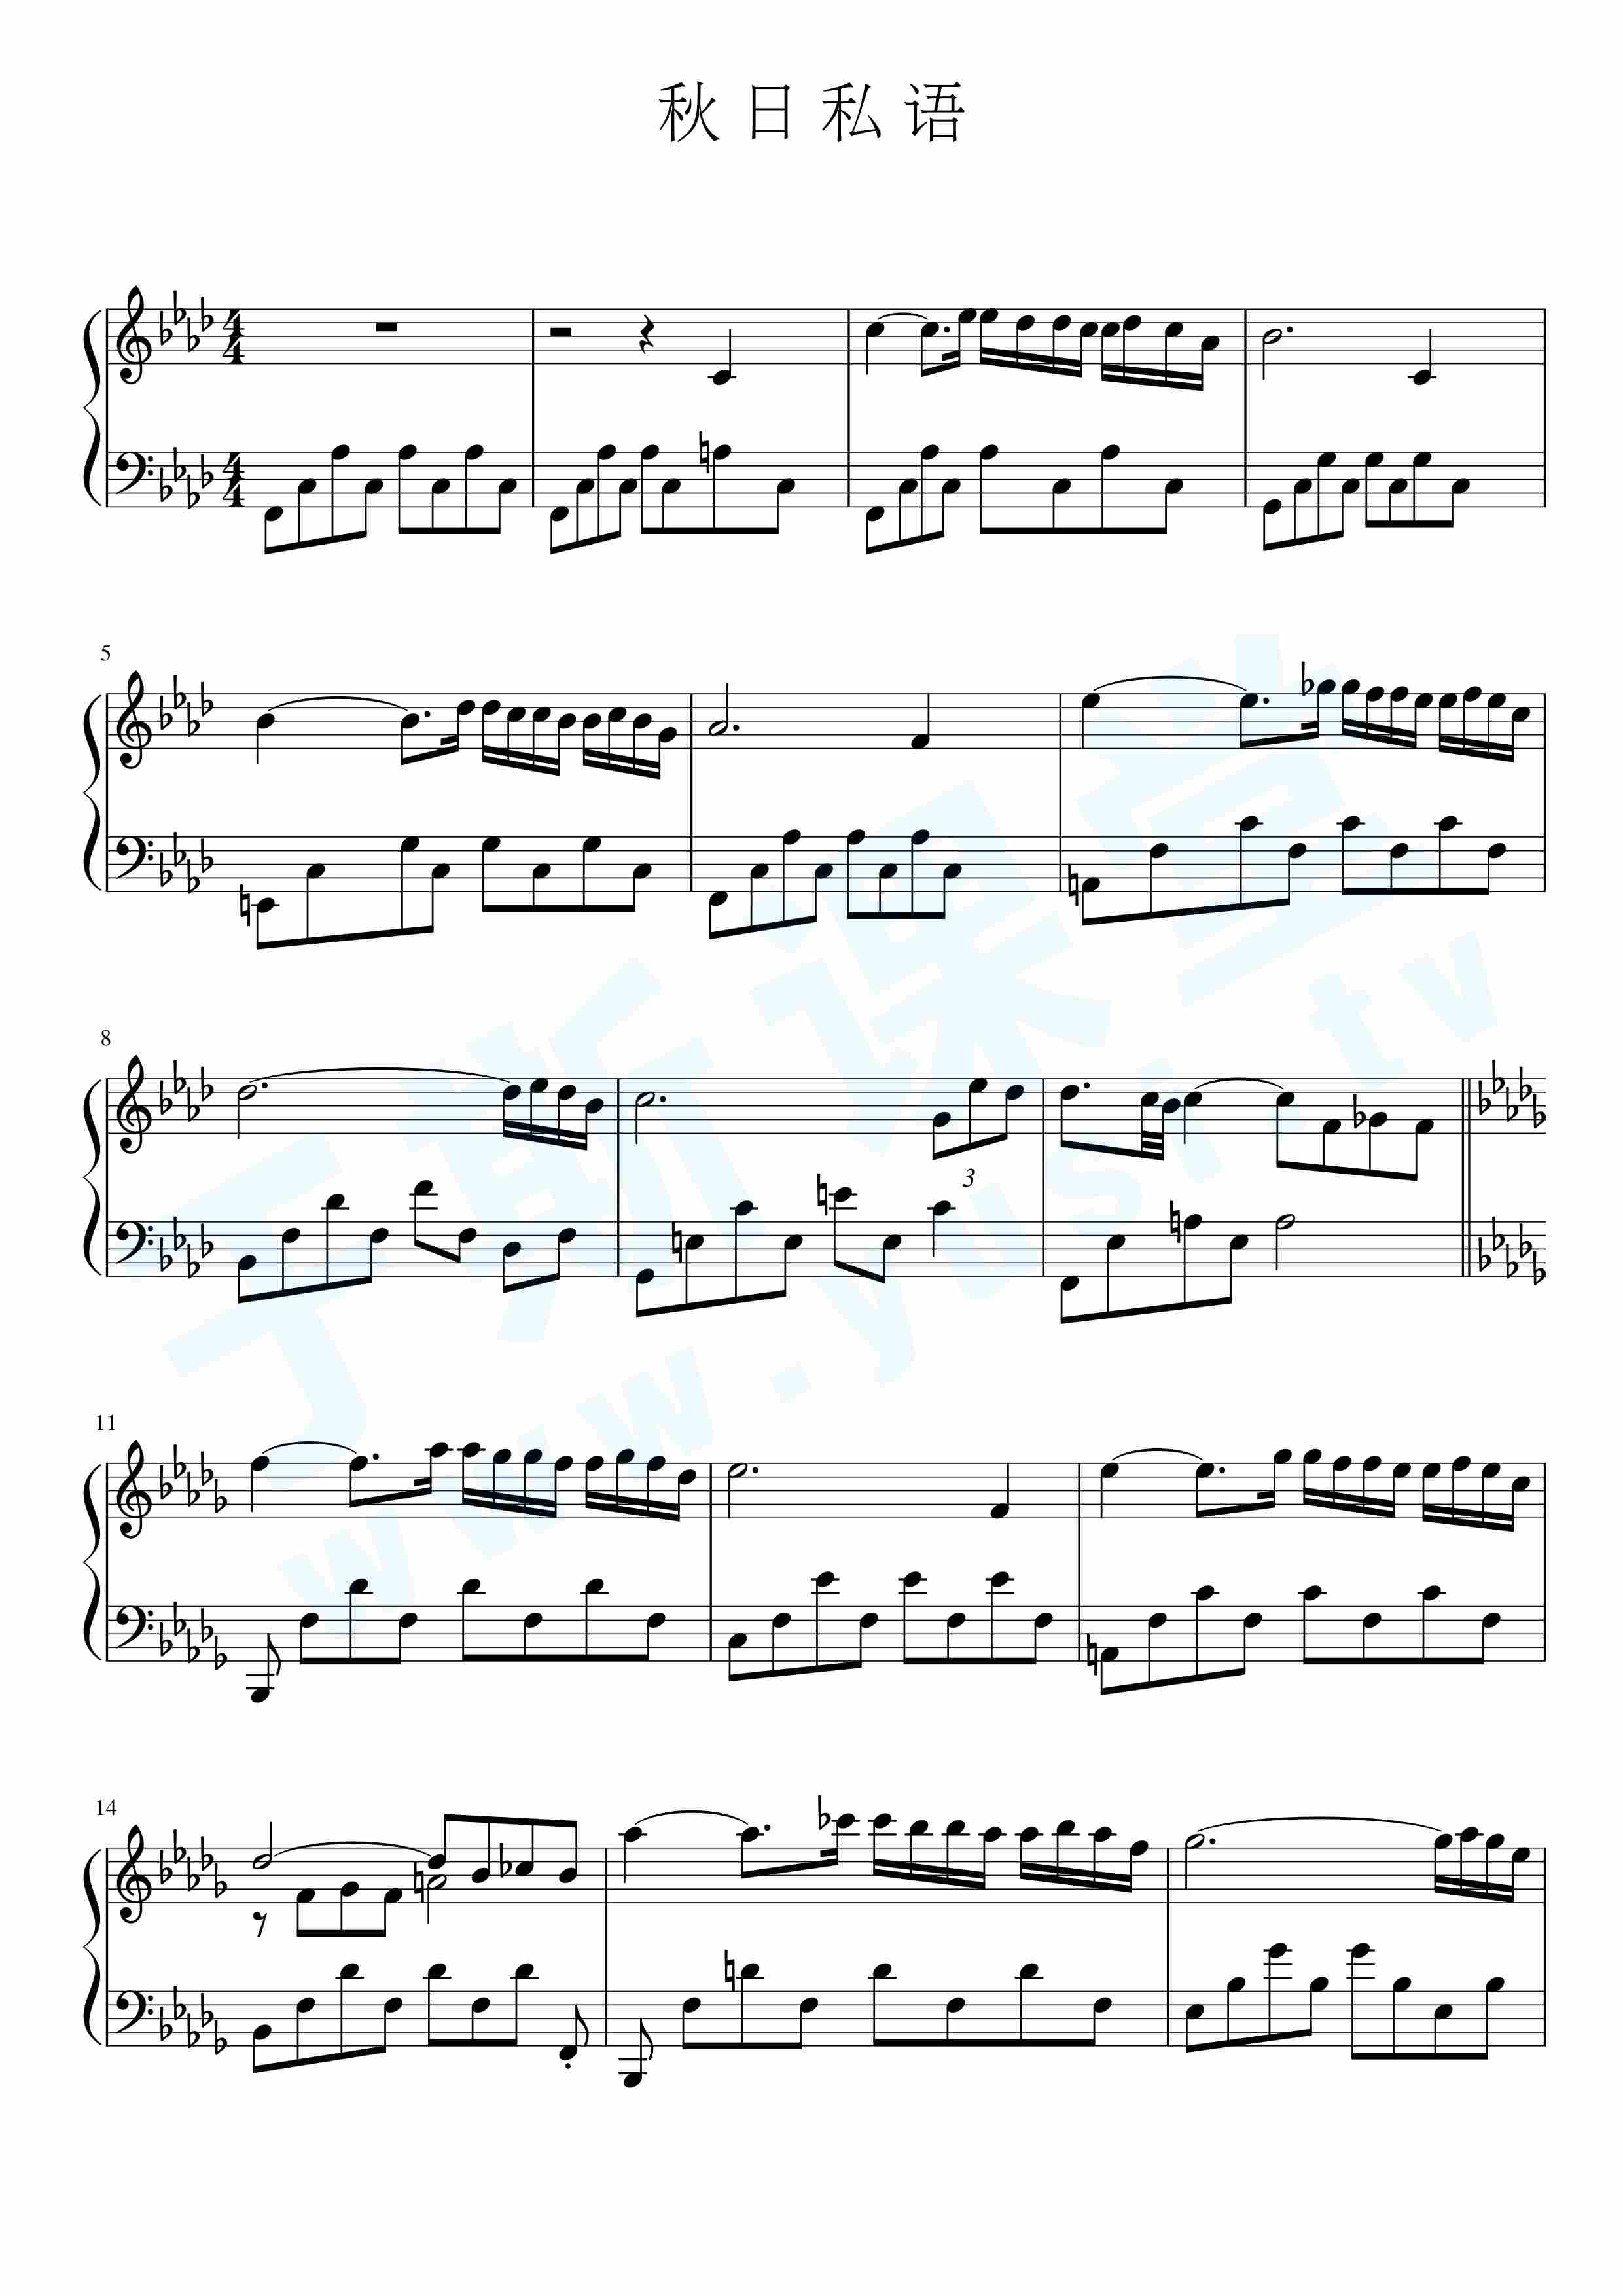 秋日的私语 第29小节改动版-钢琴谱-最全钢琴谱